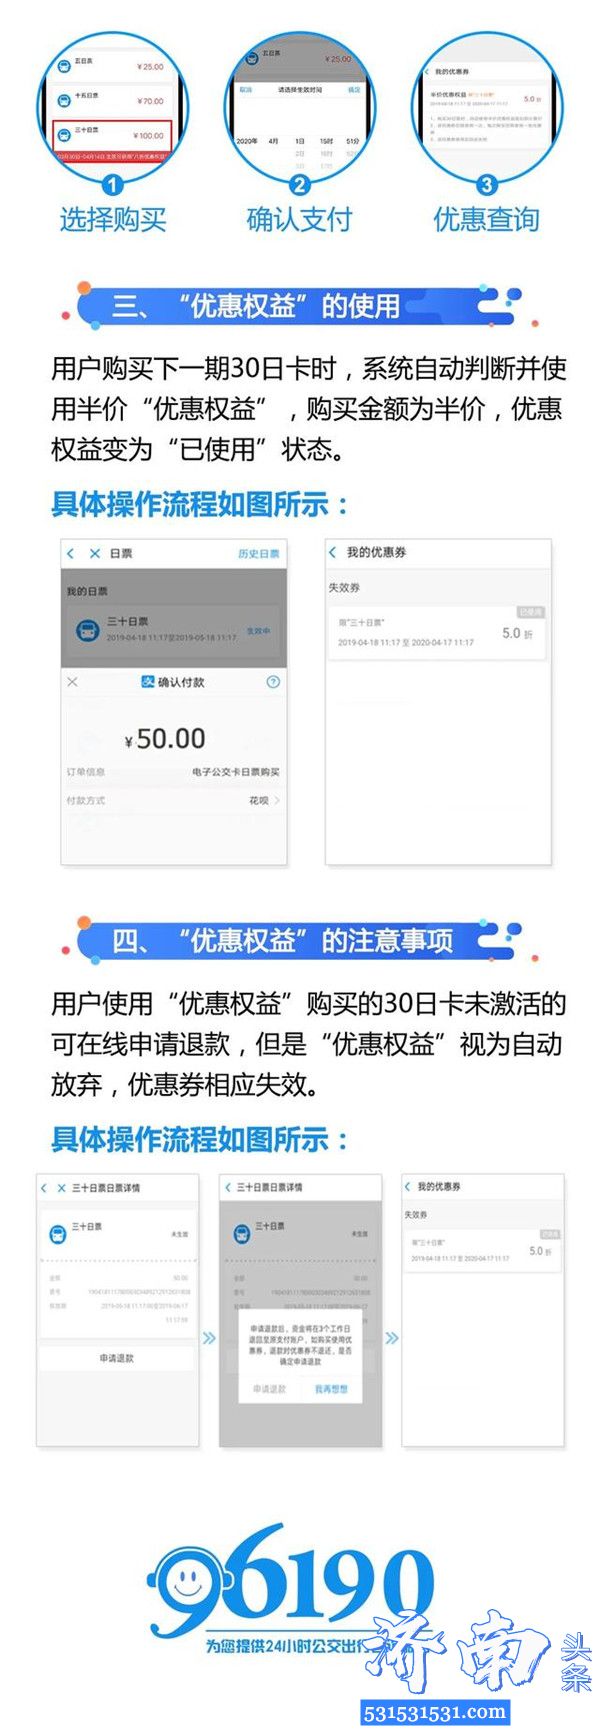 济南云公交卡推出优惠活动半价优惠可享三次 附使用流程